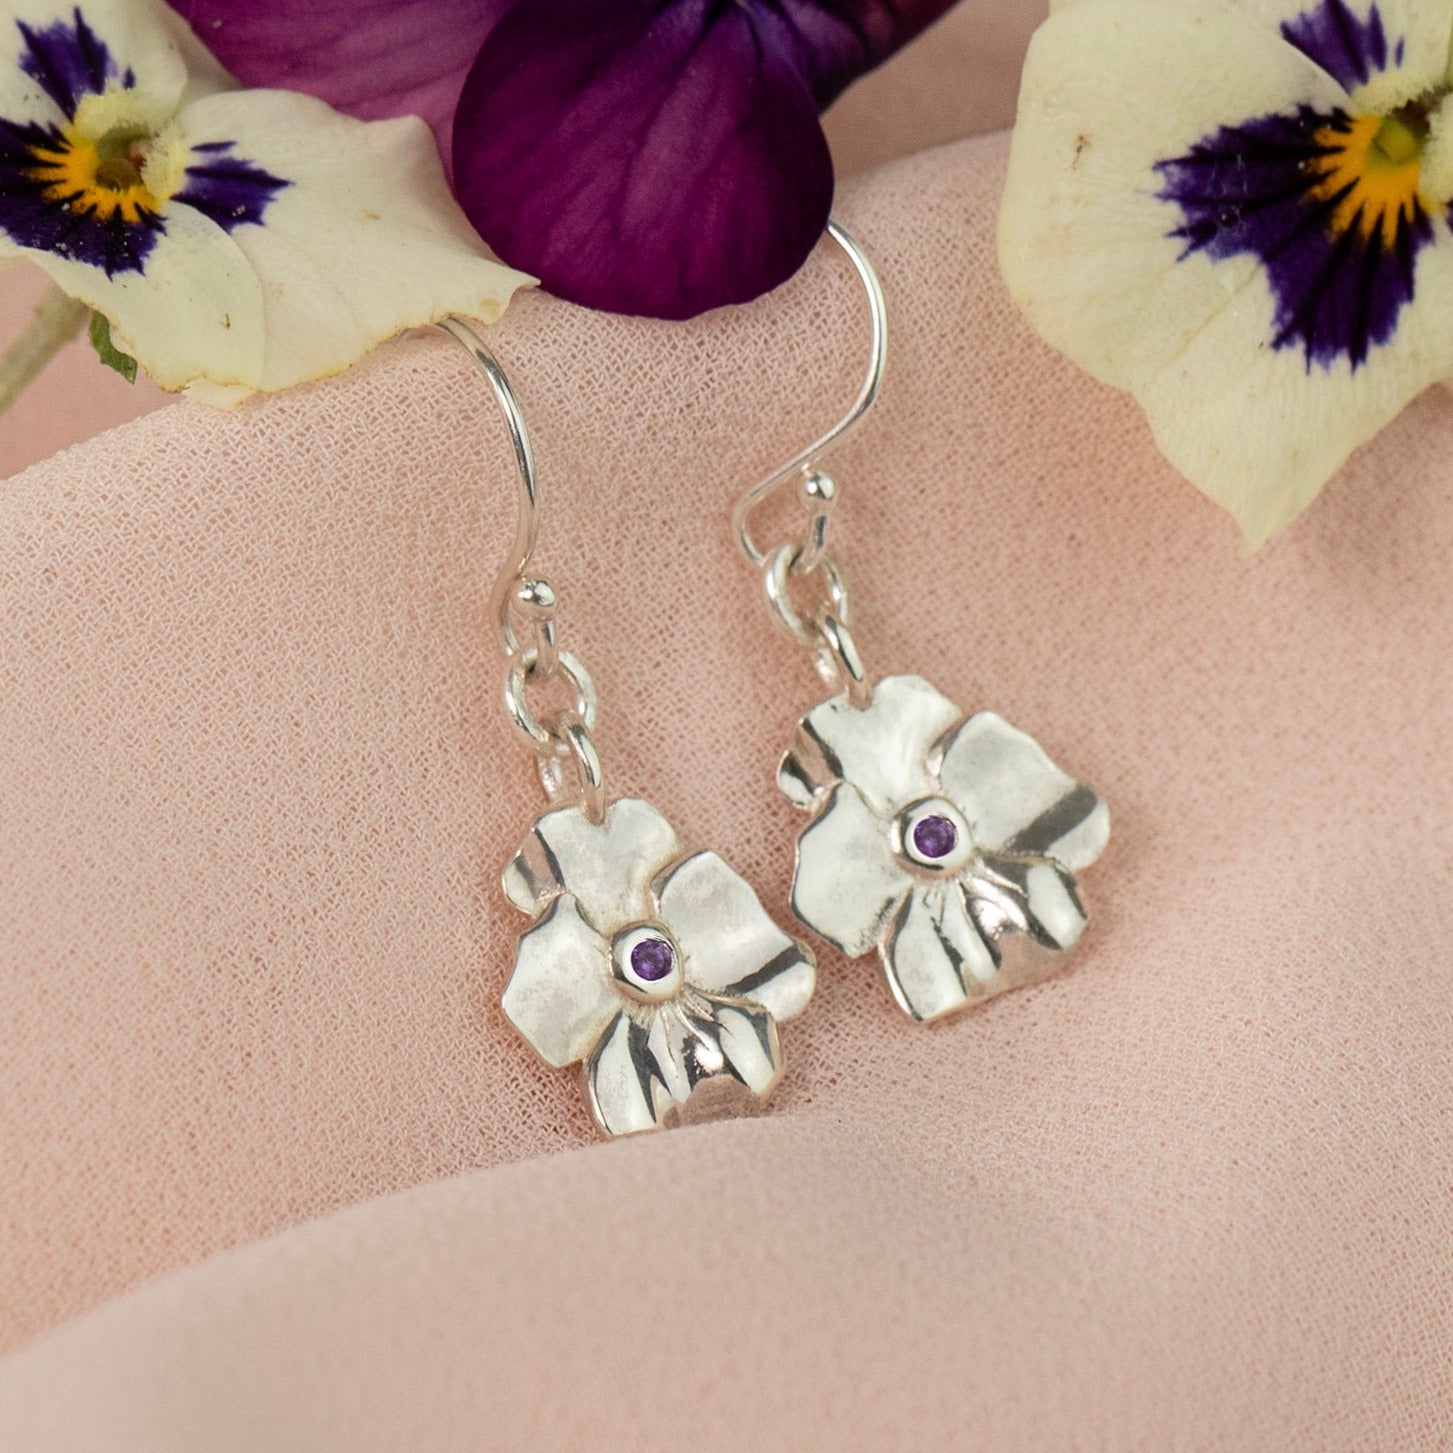 Violet and amethyst earrings